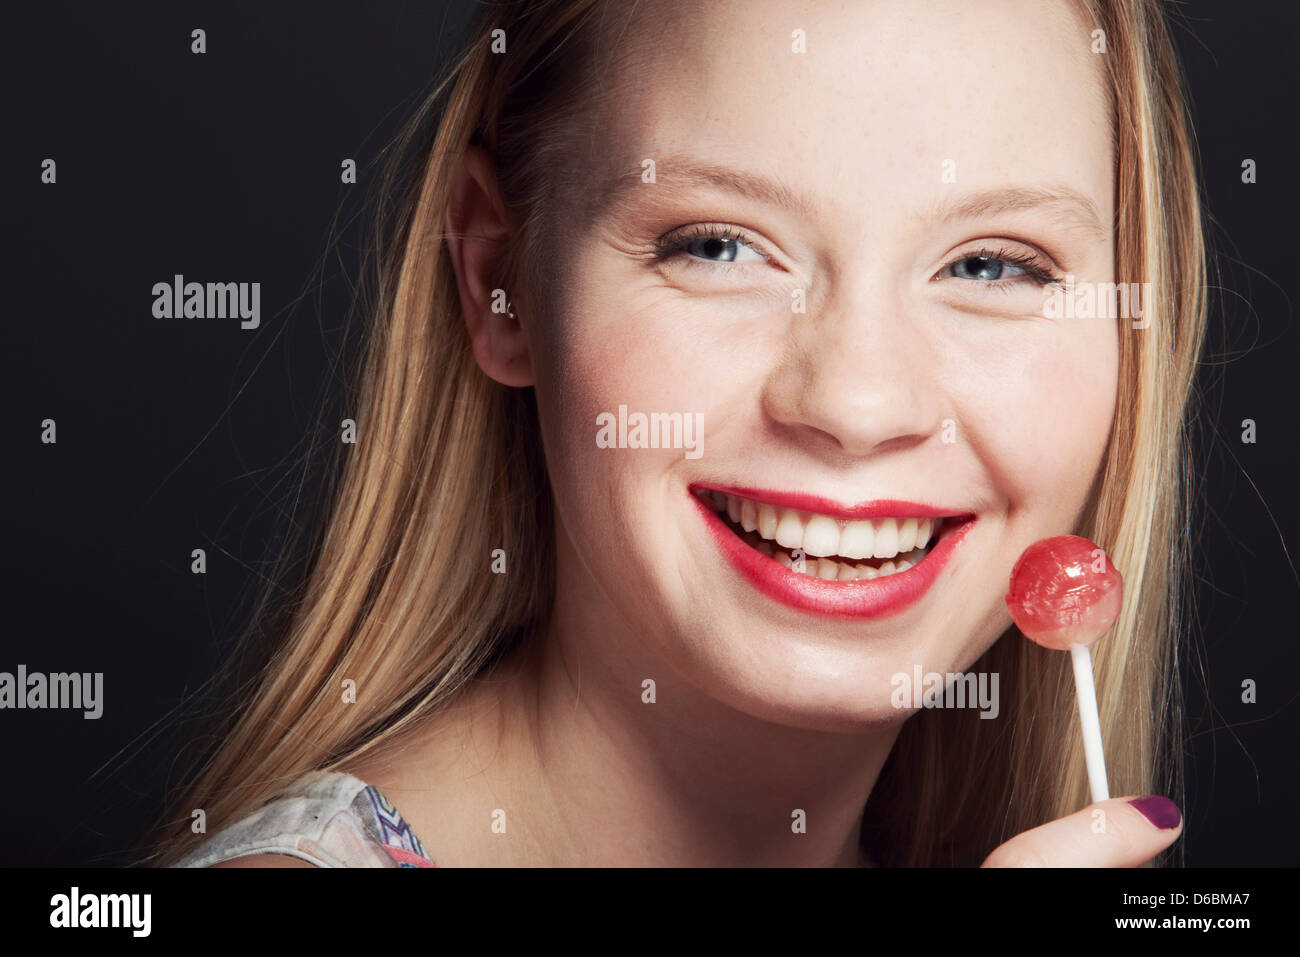 Smiling woman eating lollipop Banque D'Images